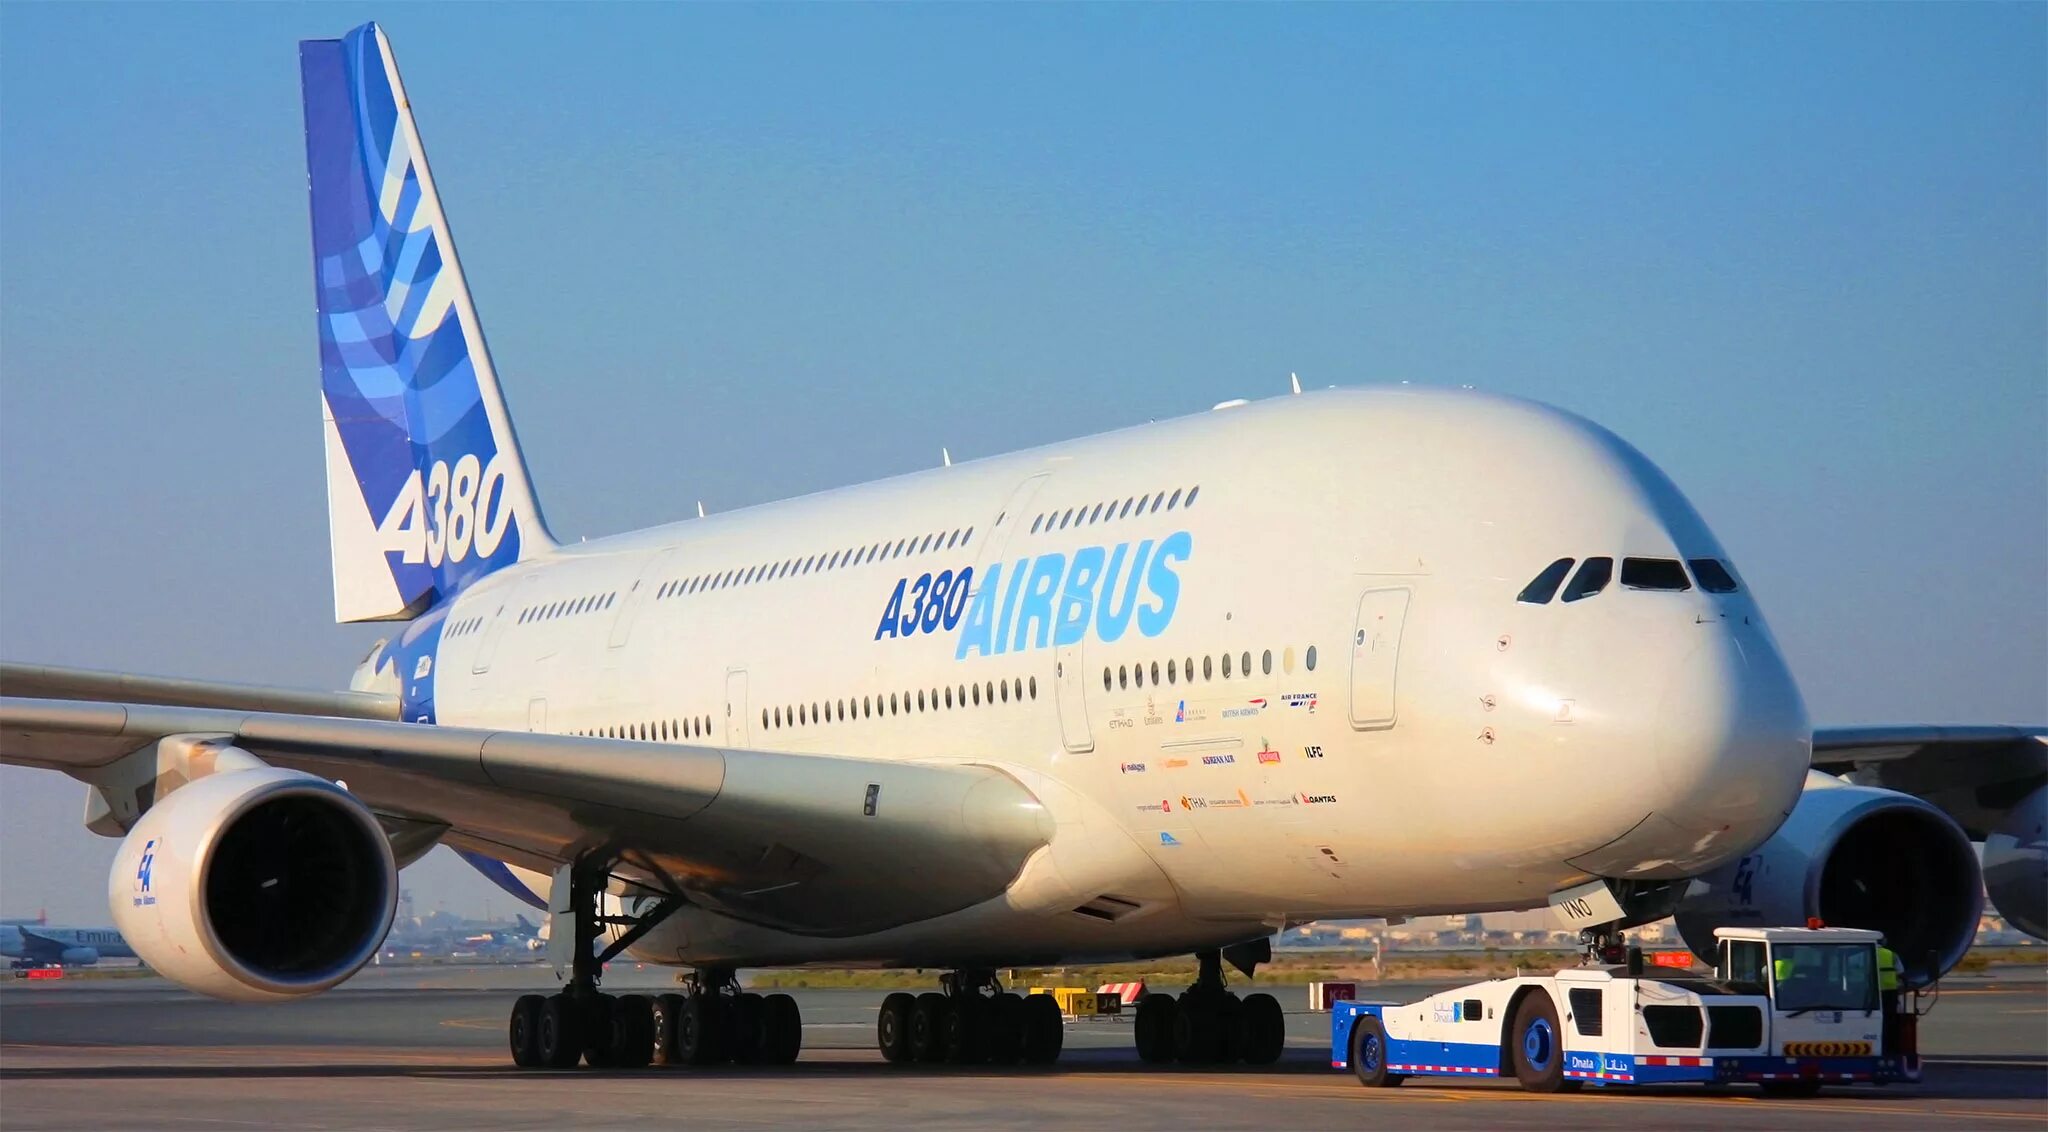 Самолет Аэробус а380. Самый большой самолет Аэробус 380. Самый большой самолёт пассажирский - Airbus а380. Самый большой пассажирский лайнер в мире - Аэробус а380.